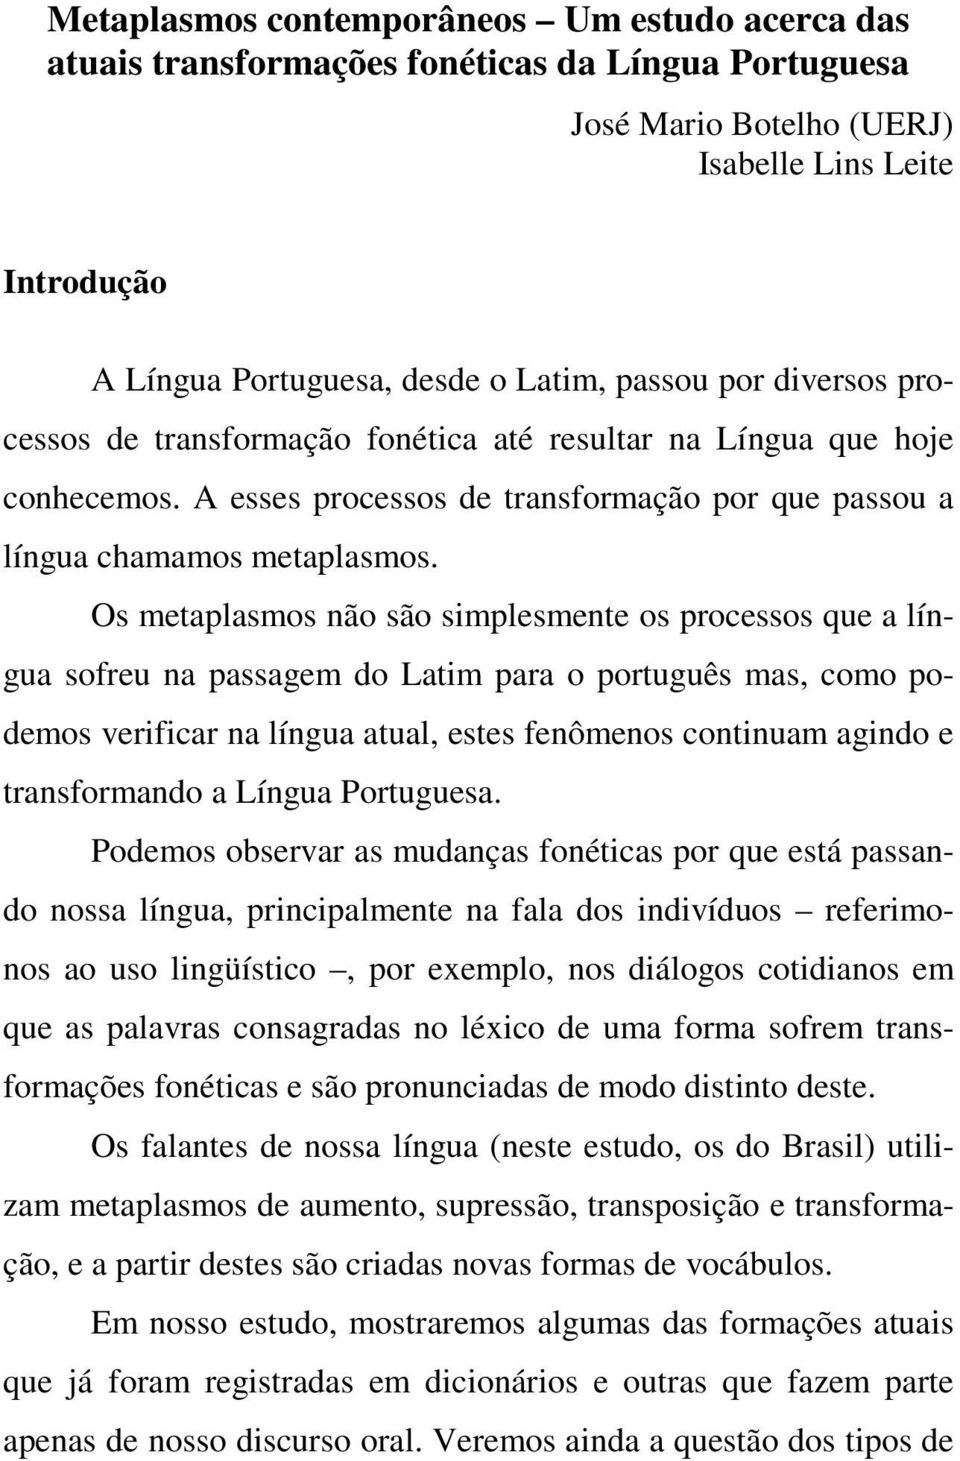 Os metaplasmos não são simplesmente os processos que a língua sofreu na passagem do Latim para o português mas, como podemos verificar na língua atual, estes fenômenos continuam agindo e